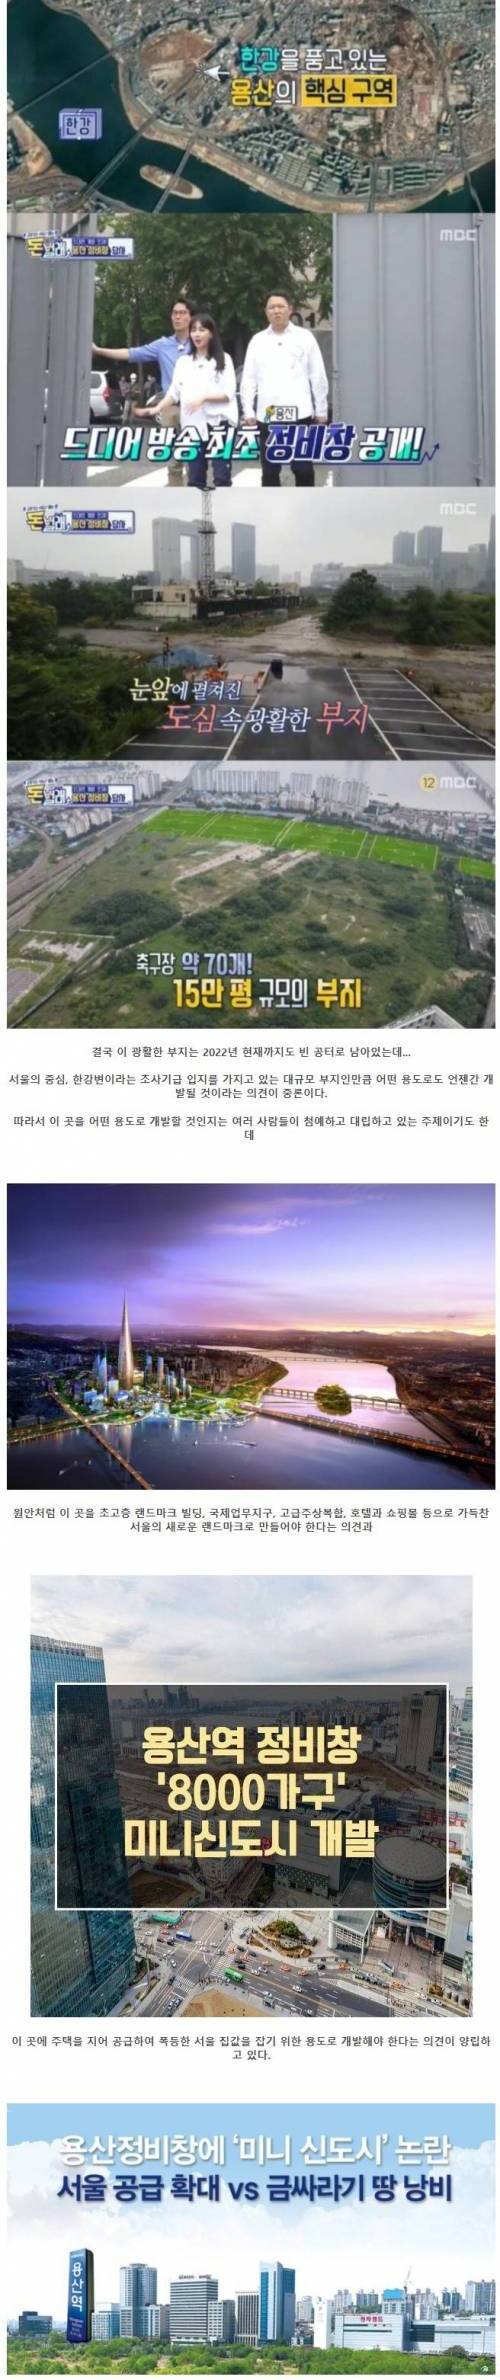 [스압] 서울 한강변 마지막 남은 금싸라기 땅